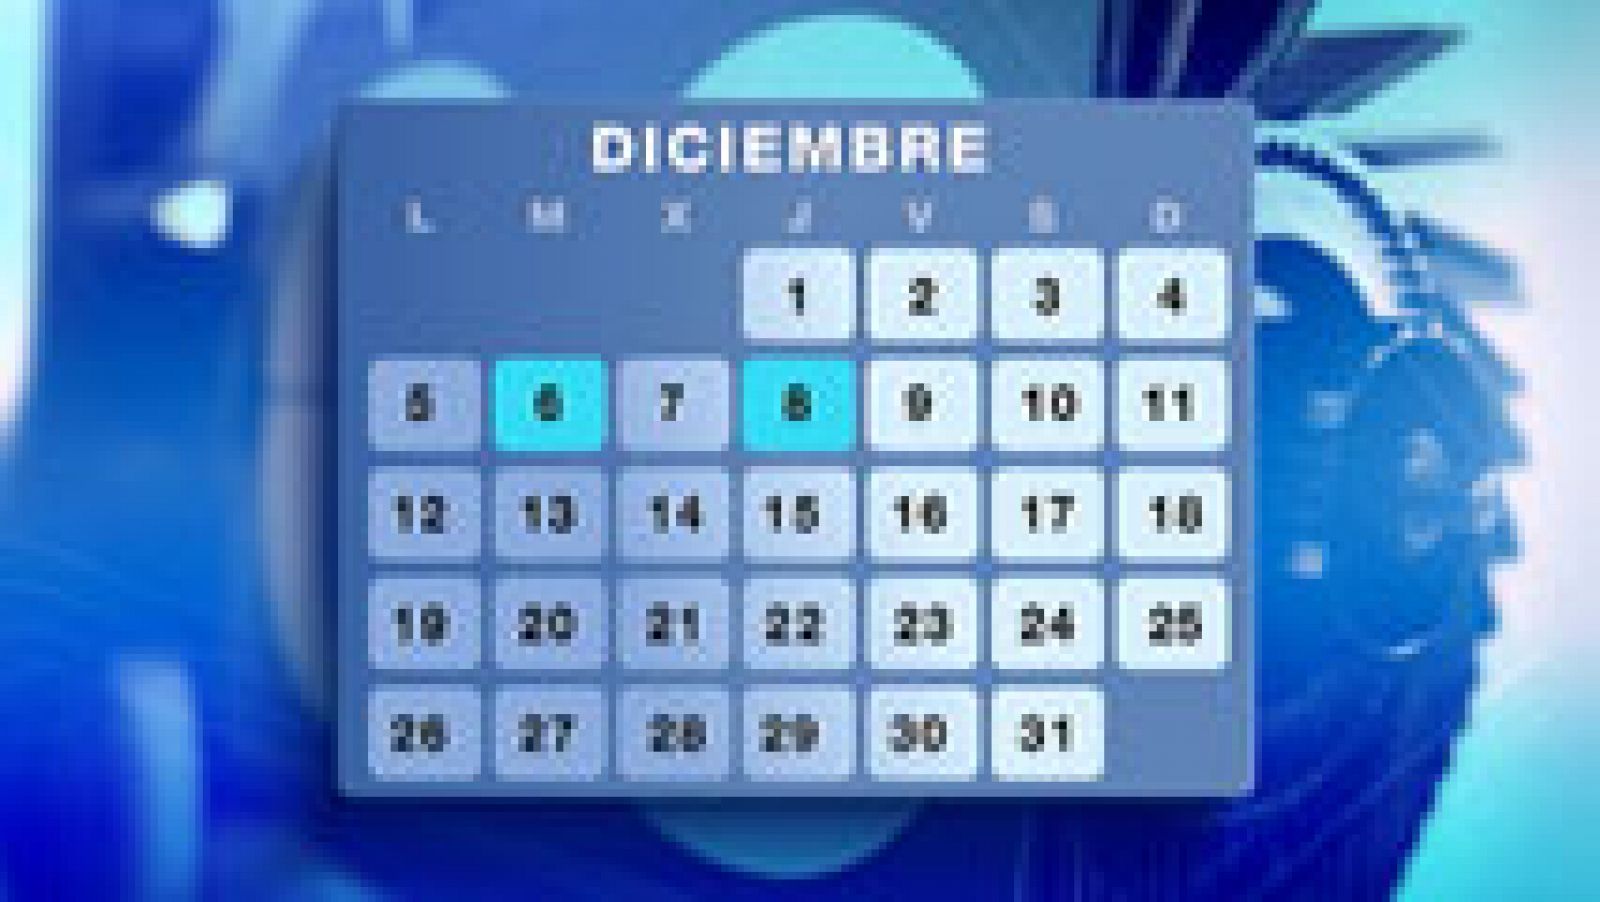 El calendario laboral del año que viene llega con ocho festivos nacionales, cuatro autonómicos y dos fiestas locales